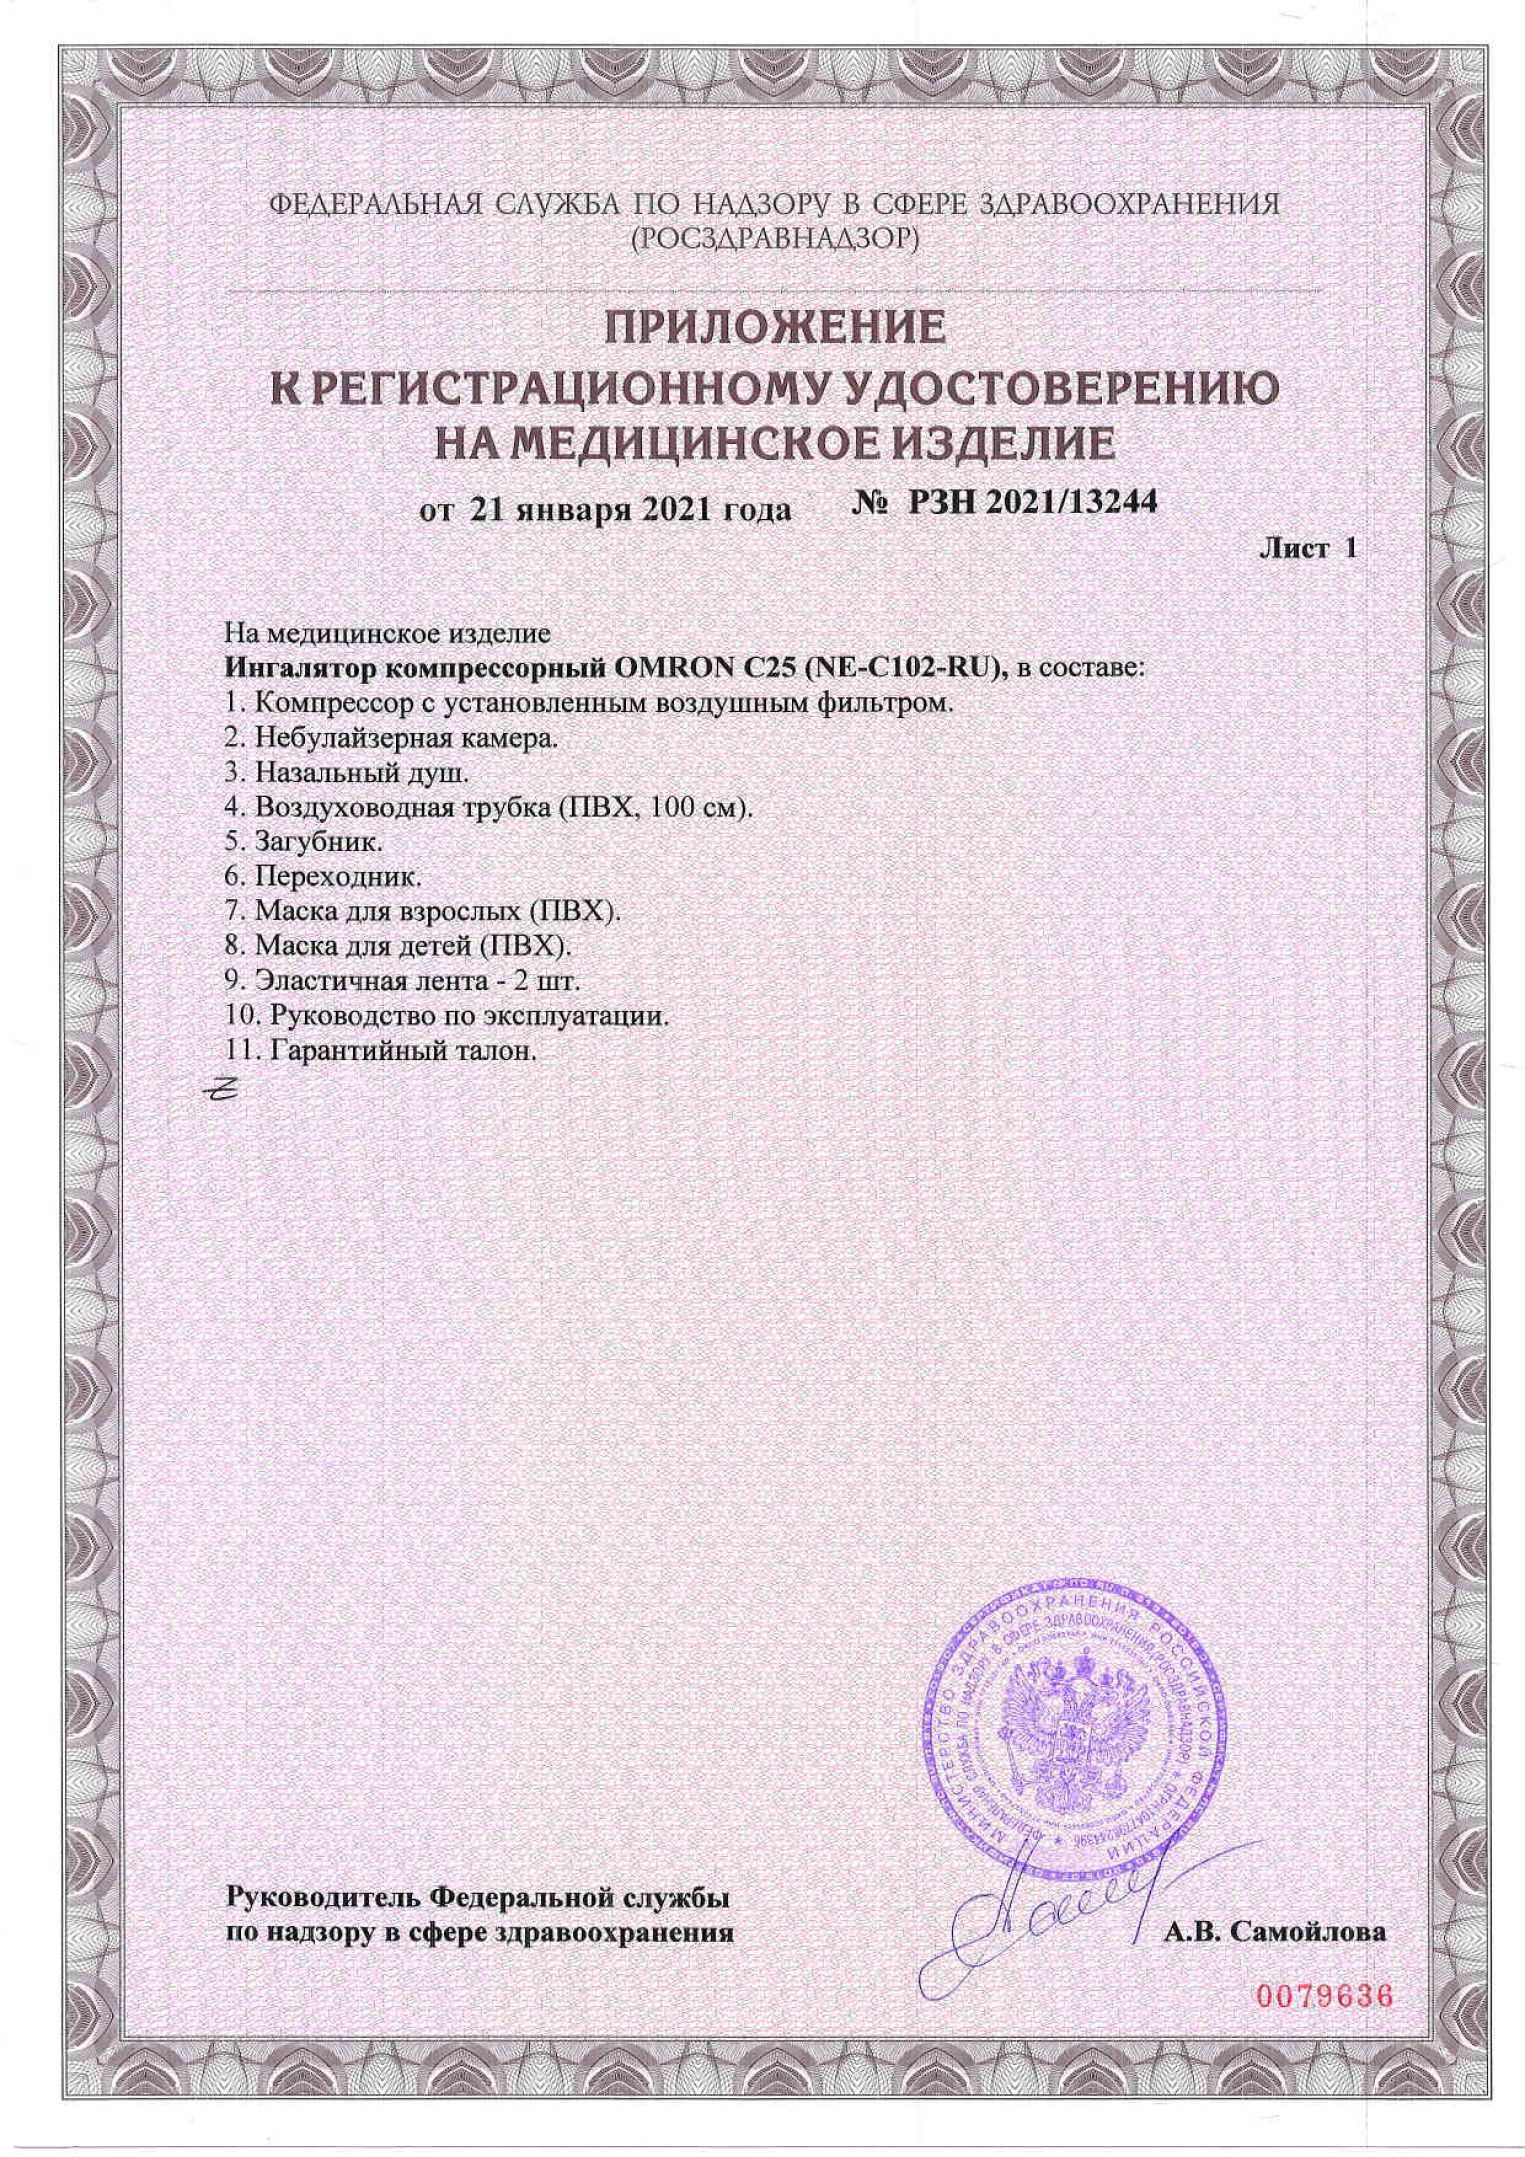 Дистиллятор металлический UD-1050 регистрационное удостоверение